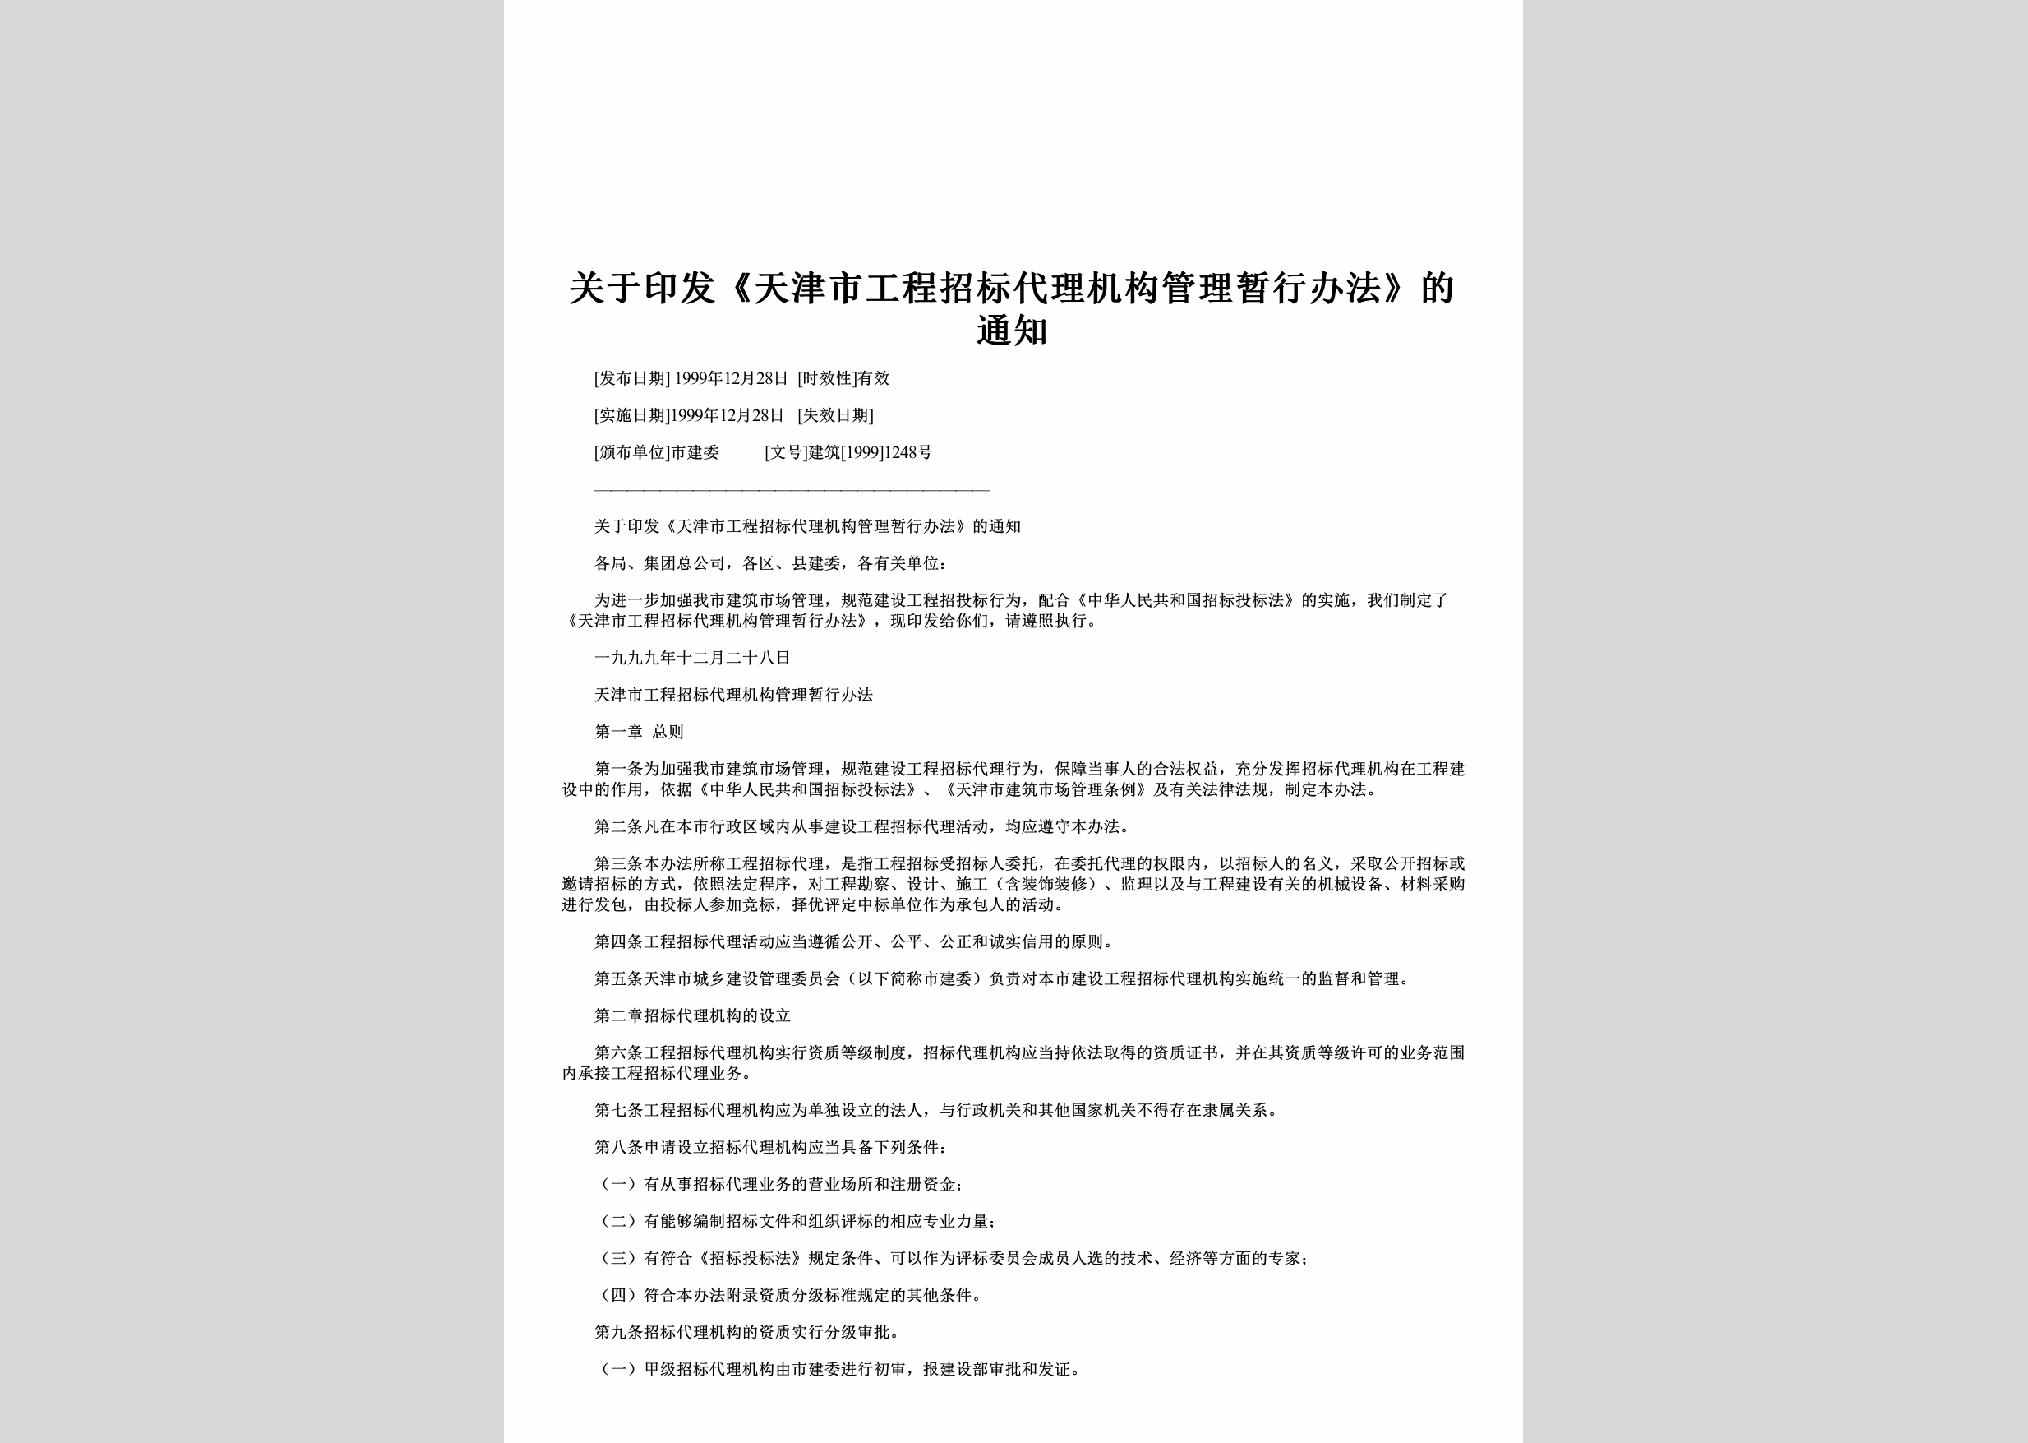 建筑[1999]1248号：关于印发《天津市工程招标代理机构管理暂行办法》的通知